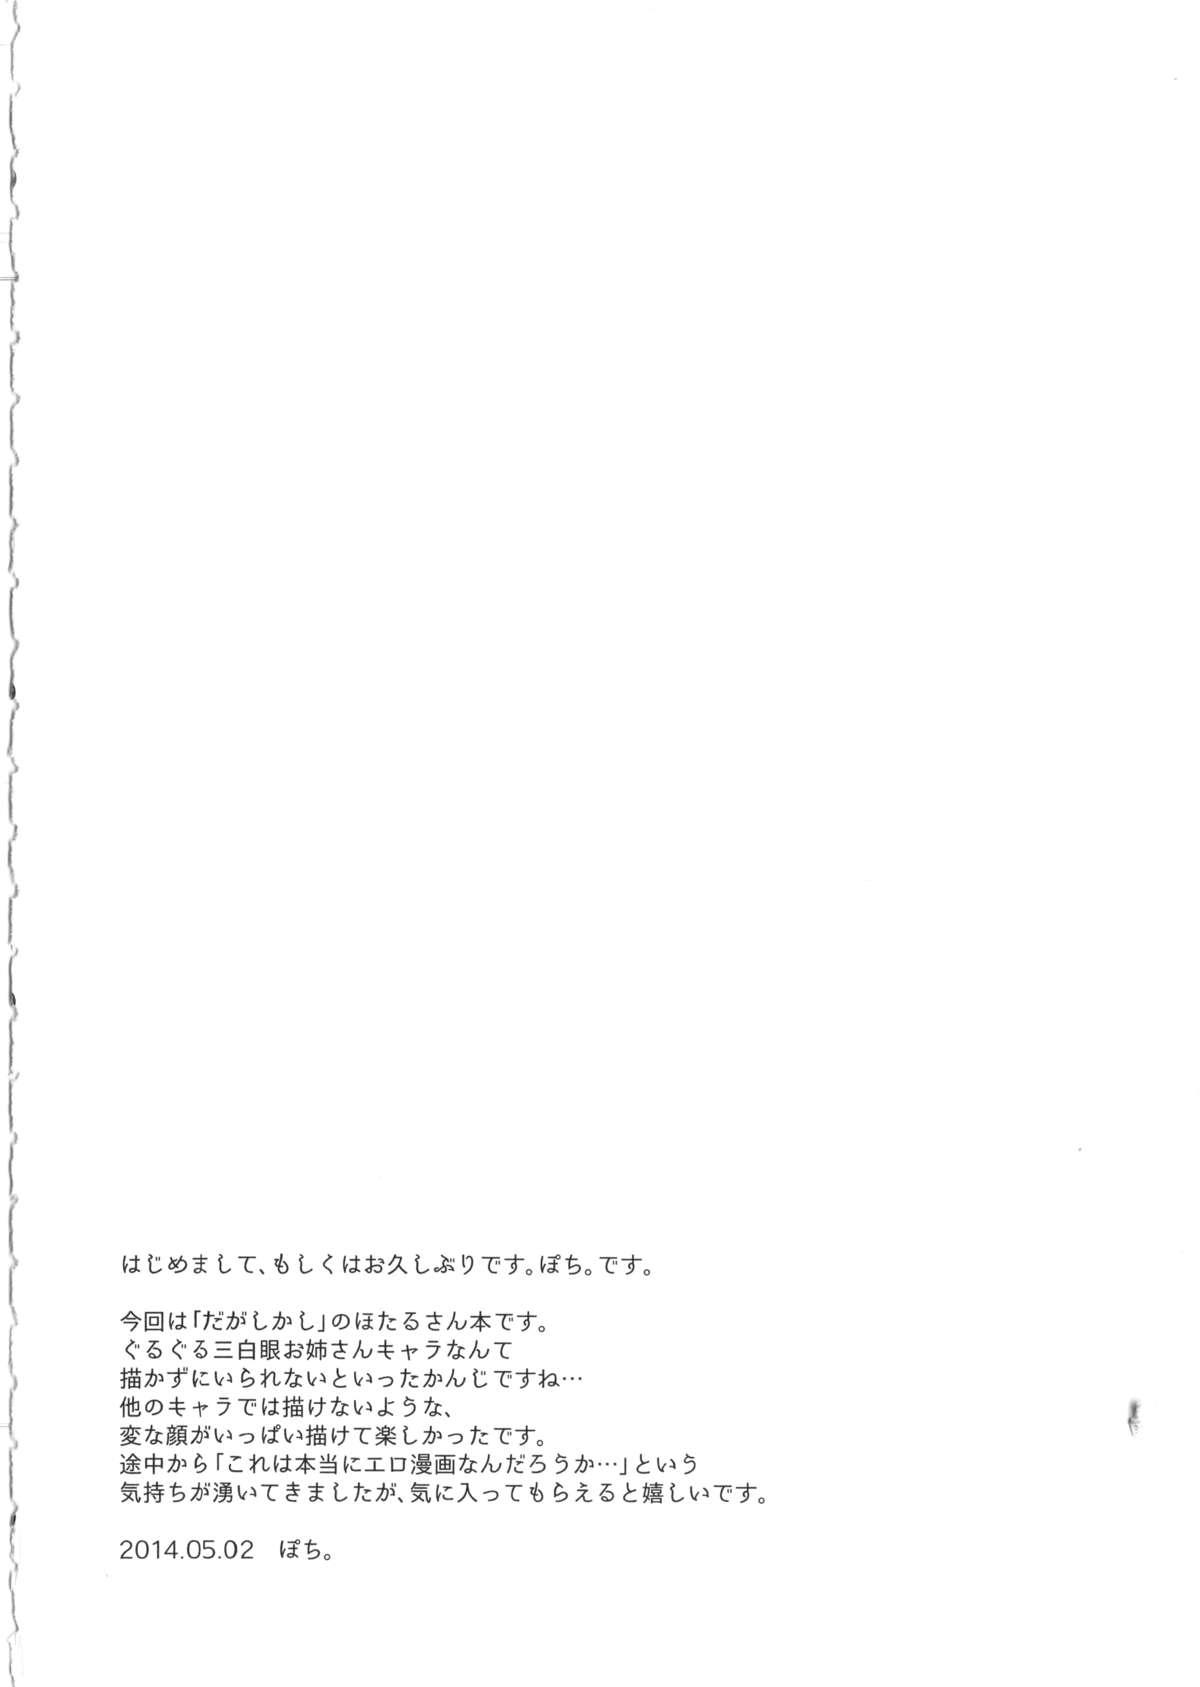 Bunda Otona no dagashi - Dagashi kashi Verification - Page 3